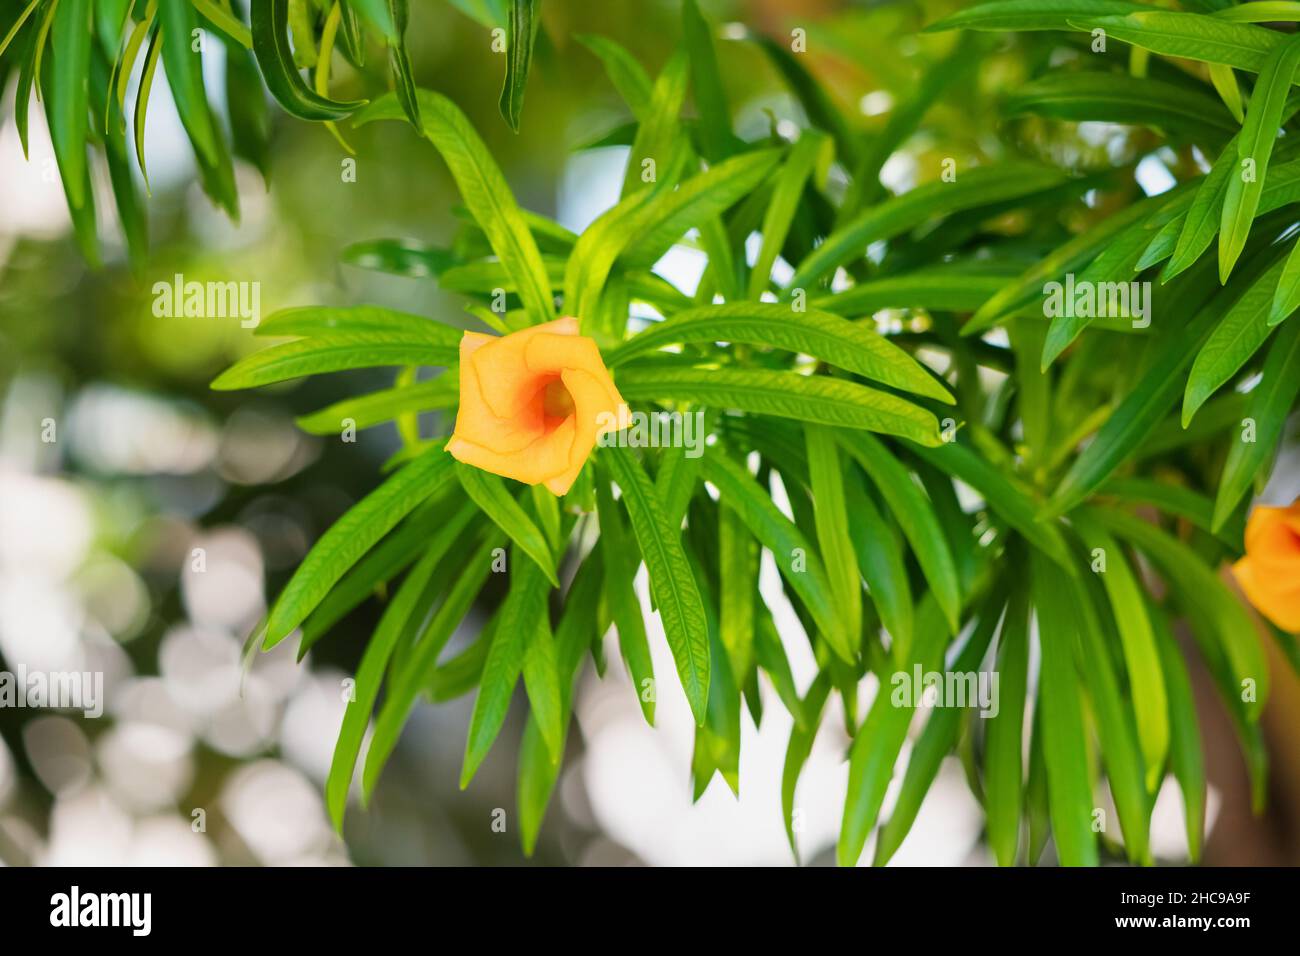 Cascabela thevetia oder Gelber Oleander Baum ist weit verbreitet als Zierpflanze in heißem Klima verwendet, aber es ist sehr giftig und giftig Stockfoto